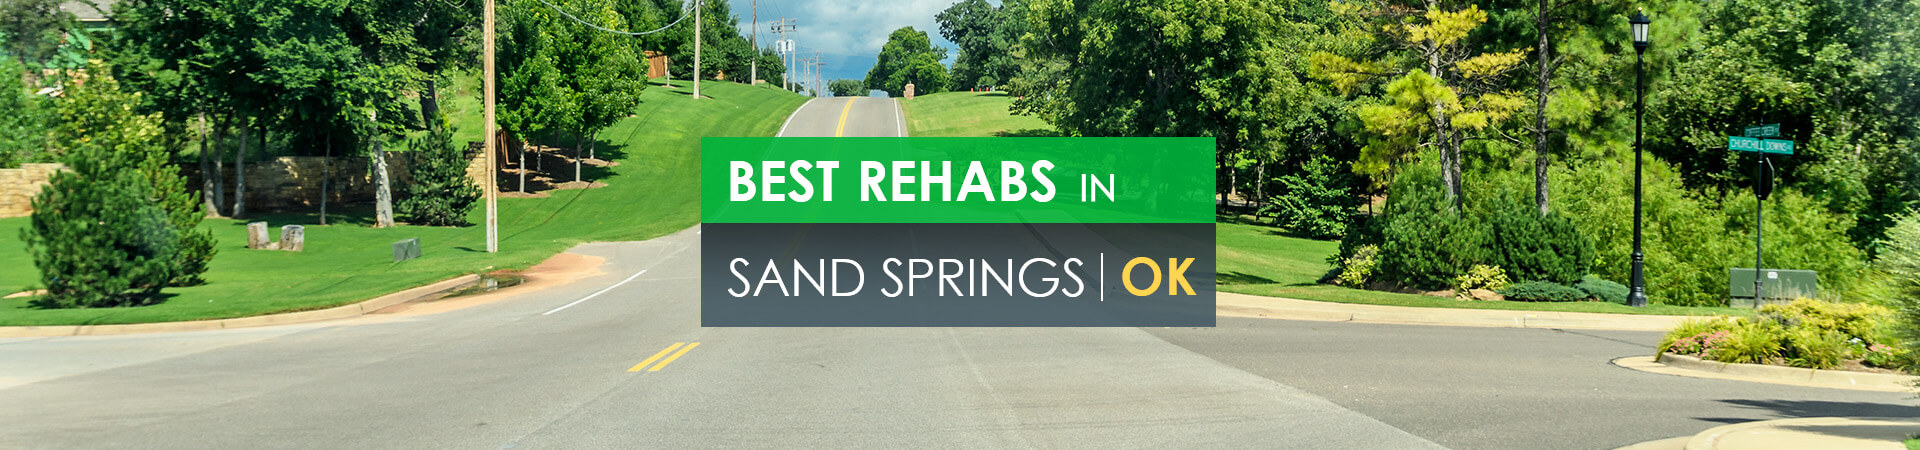 Best rehabs in Sand Springs, OK